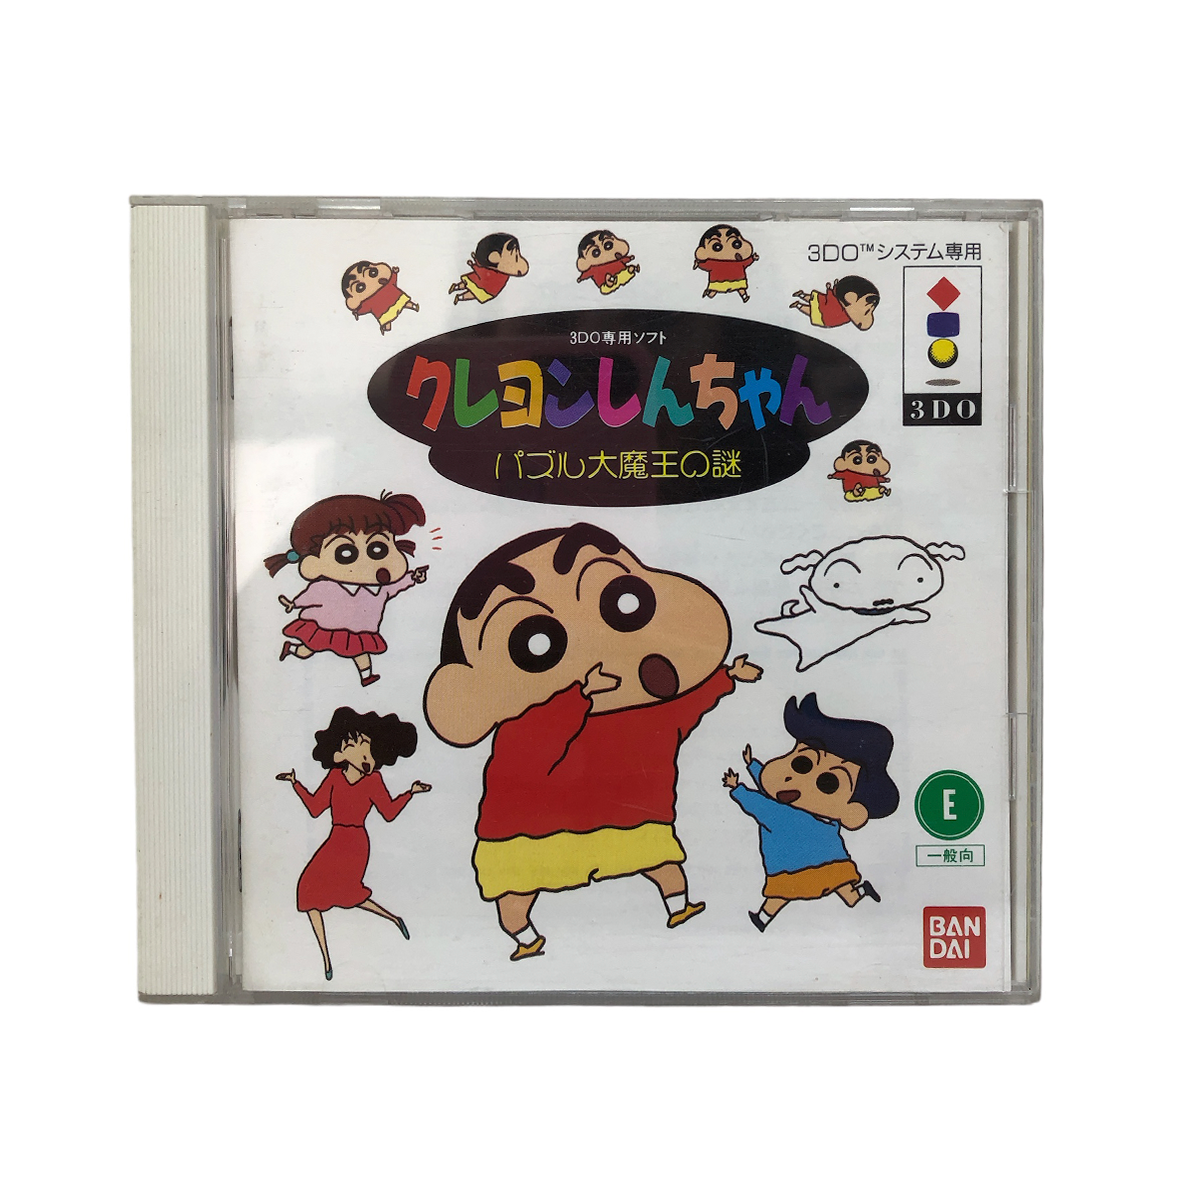 Jogo Puzzle Bobble - 3DO (Japonês) - MeuGameUsado